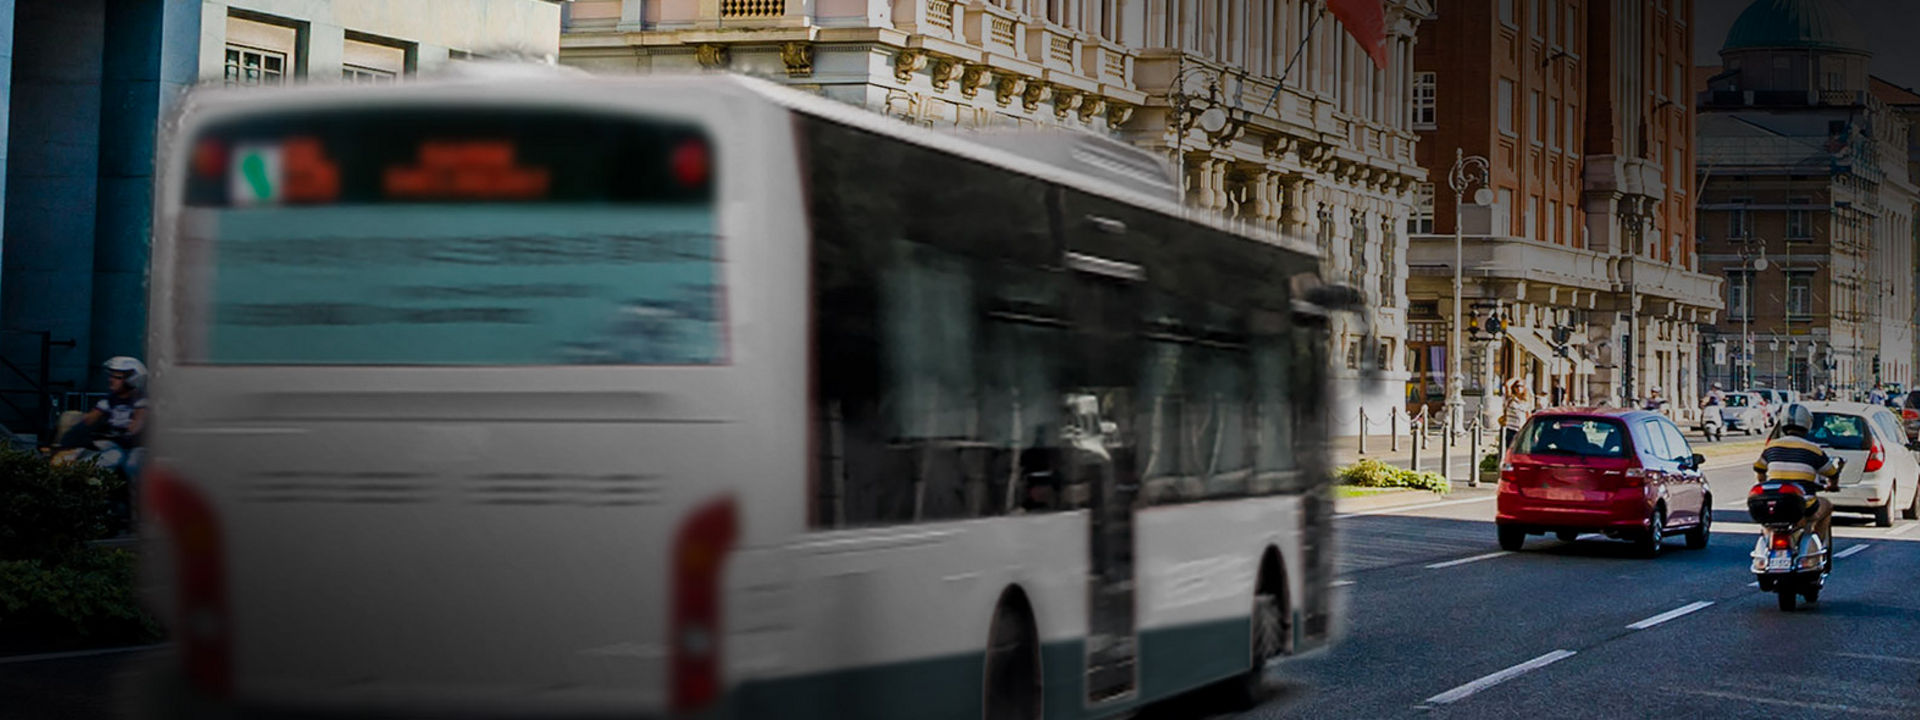 Billedet viser bagenden af en bus monteret med Bridgestones busdæk, der kører inde i en bymidte.